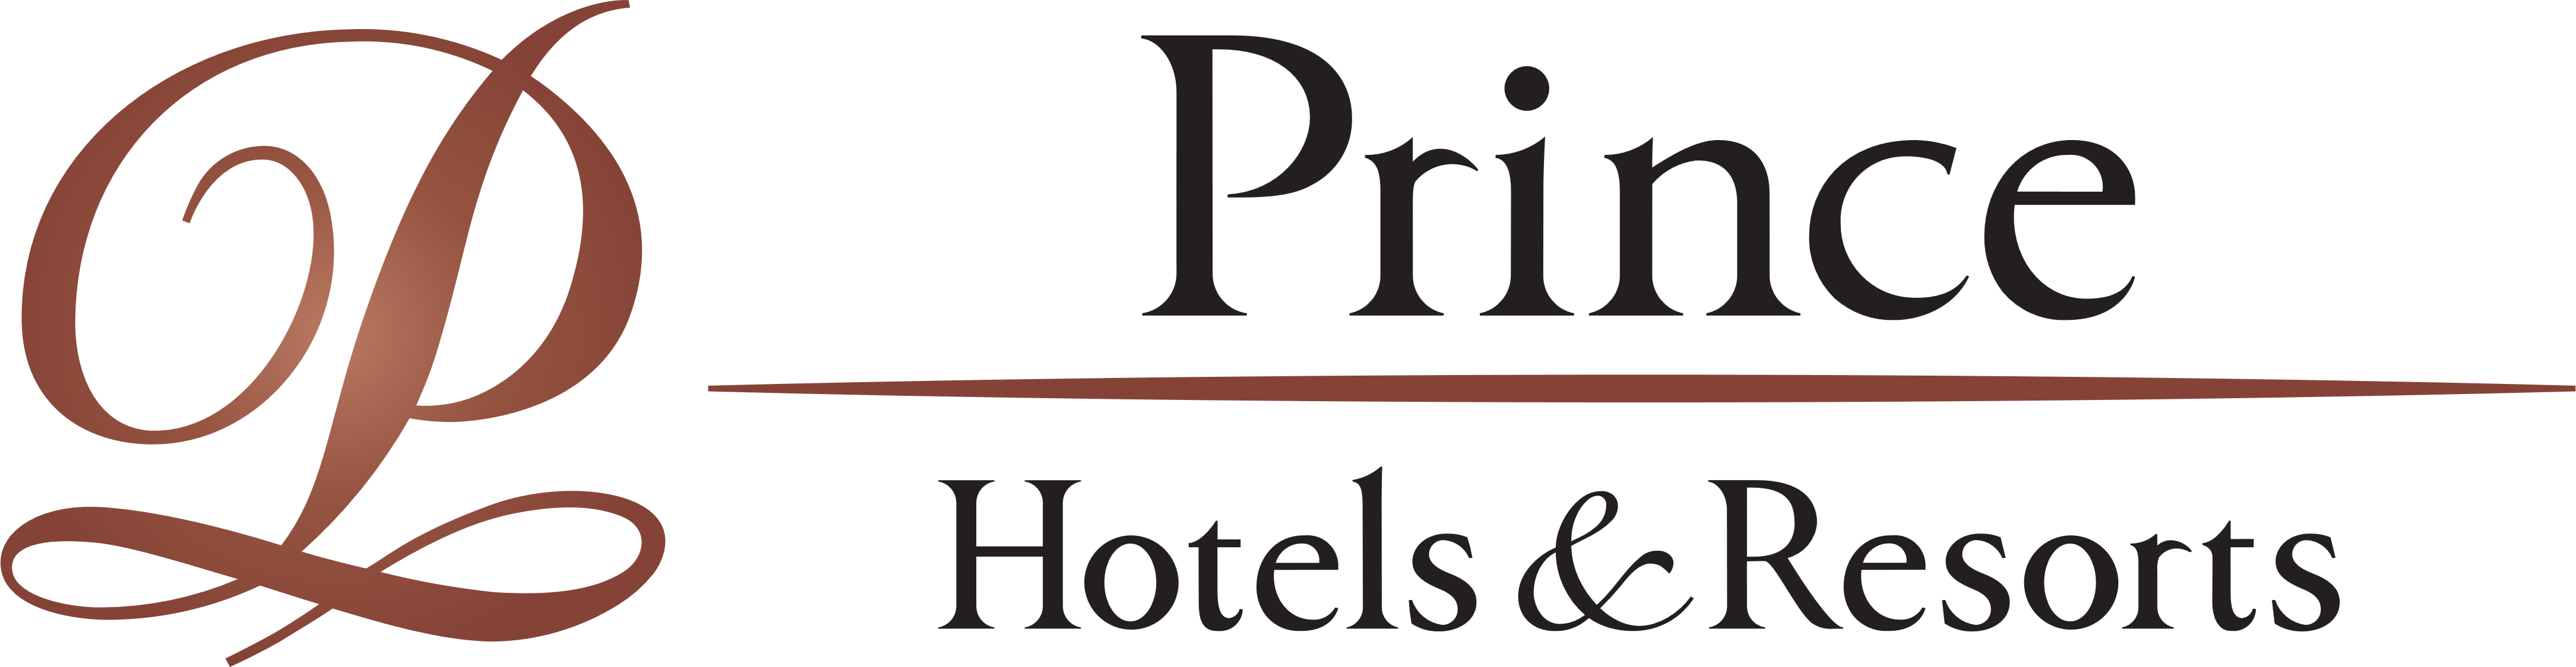 Hotels and Resorts Logo - Prince Hotels & Resorts